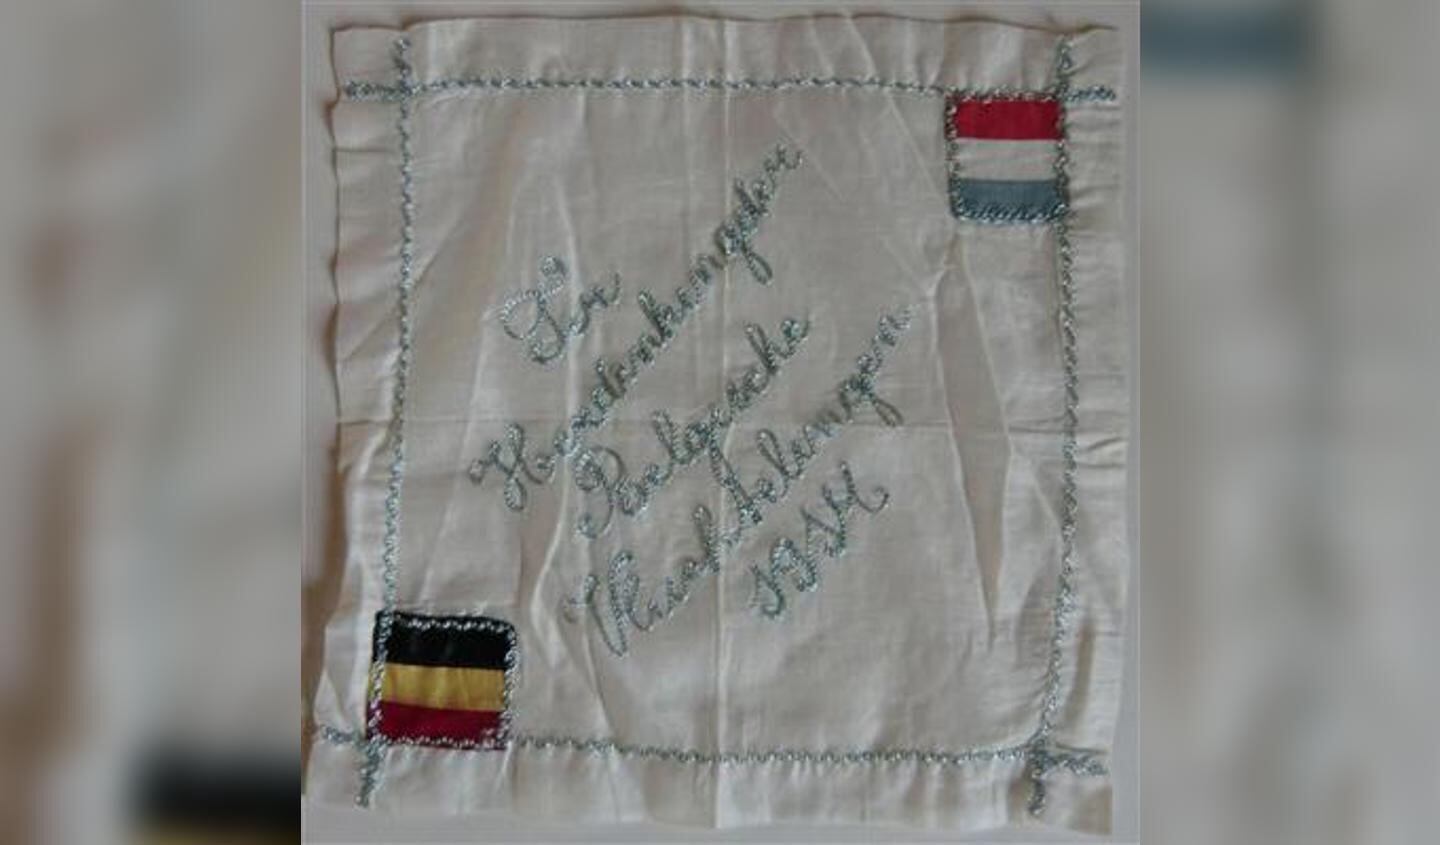 Zakdoek ter herinnering aan de Eerste Wereldoorlog uit de collectie van Museum Flehite.